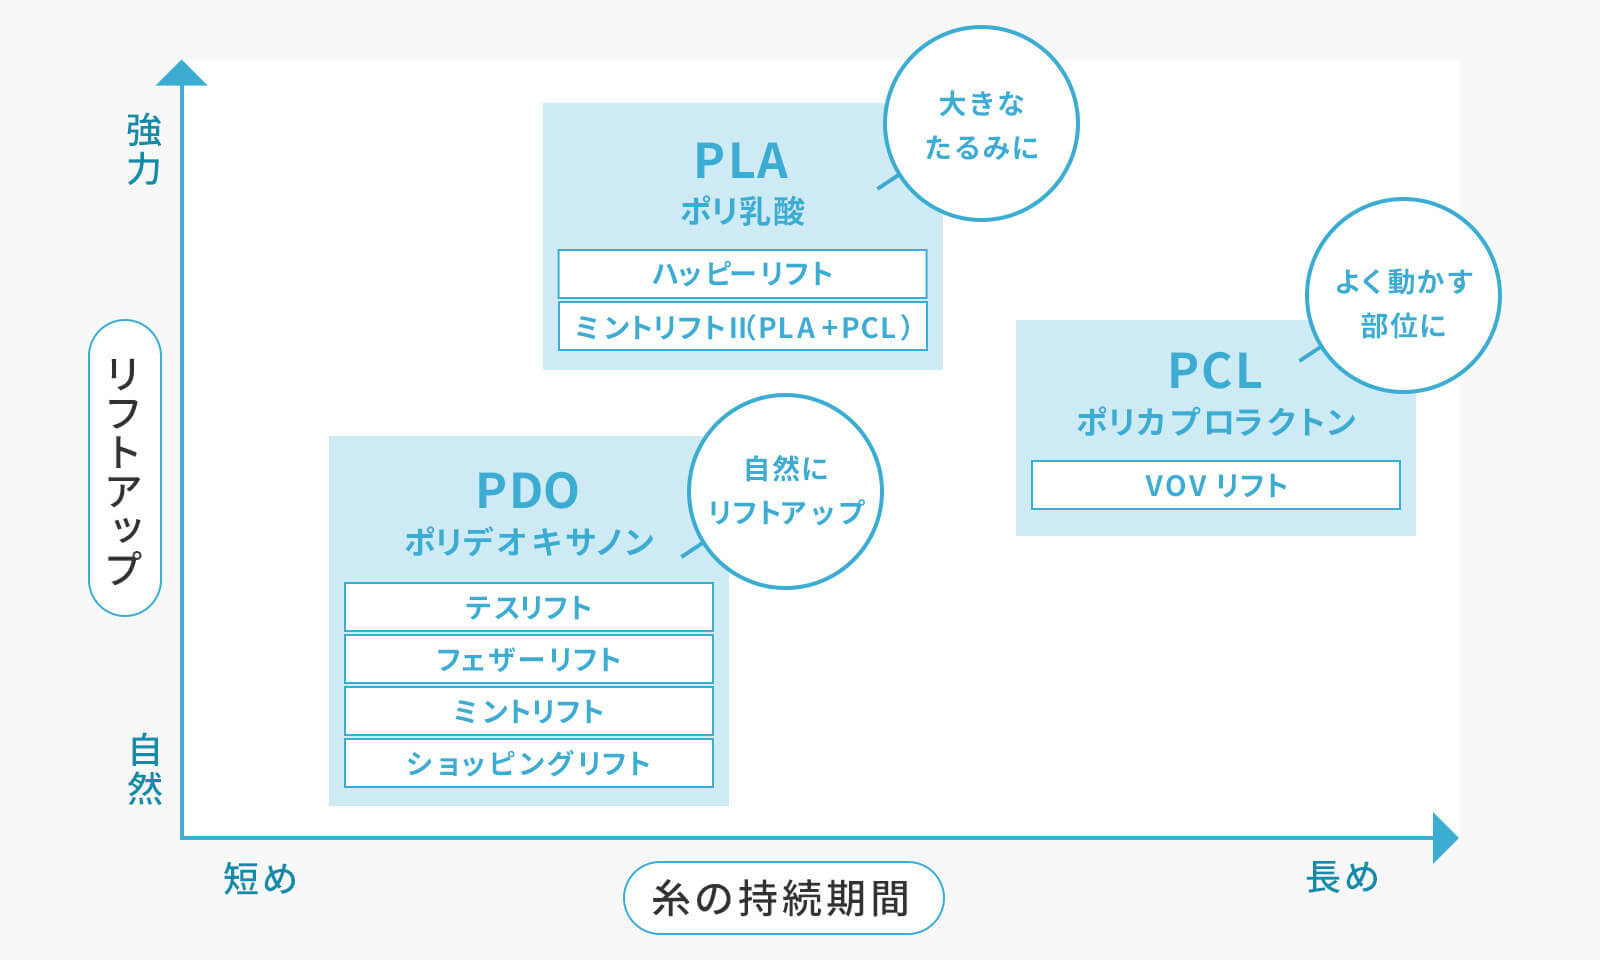 PDO・PCL・PLAの違いを図に表しました。糸の持続期間が横軸で、リフトアップが縦軸になっております。